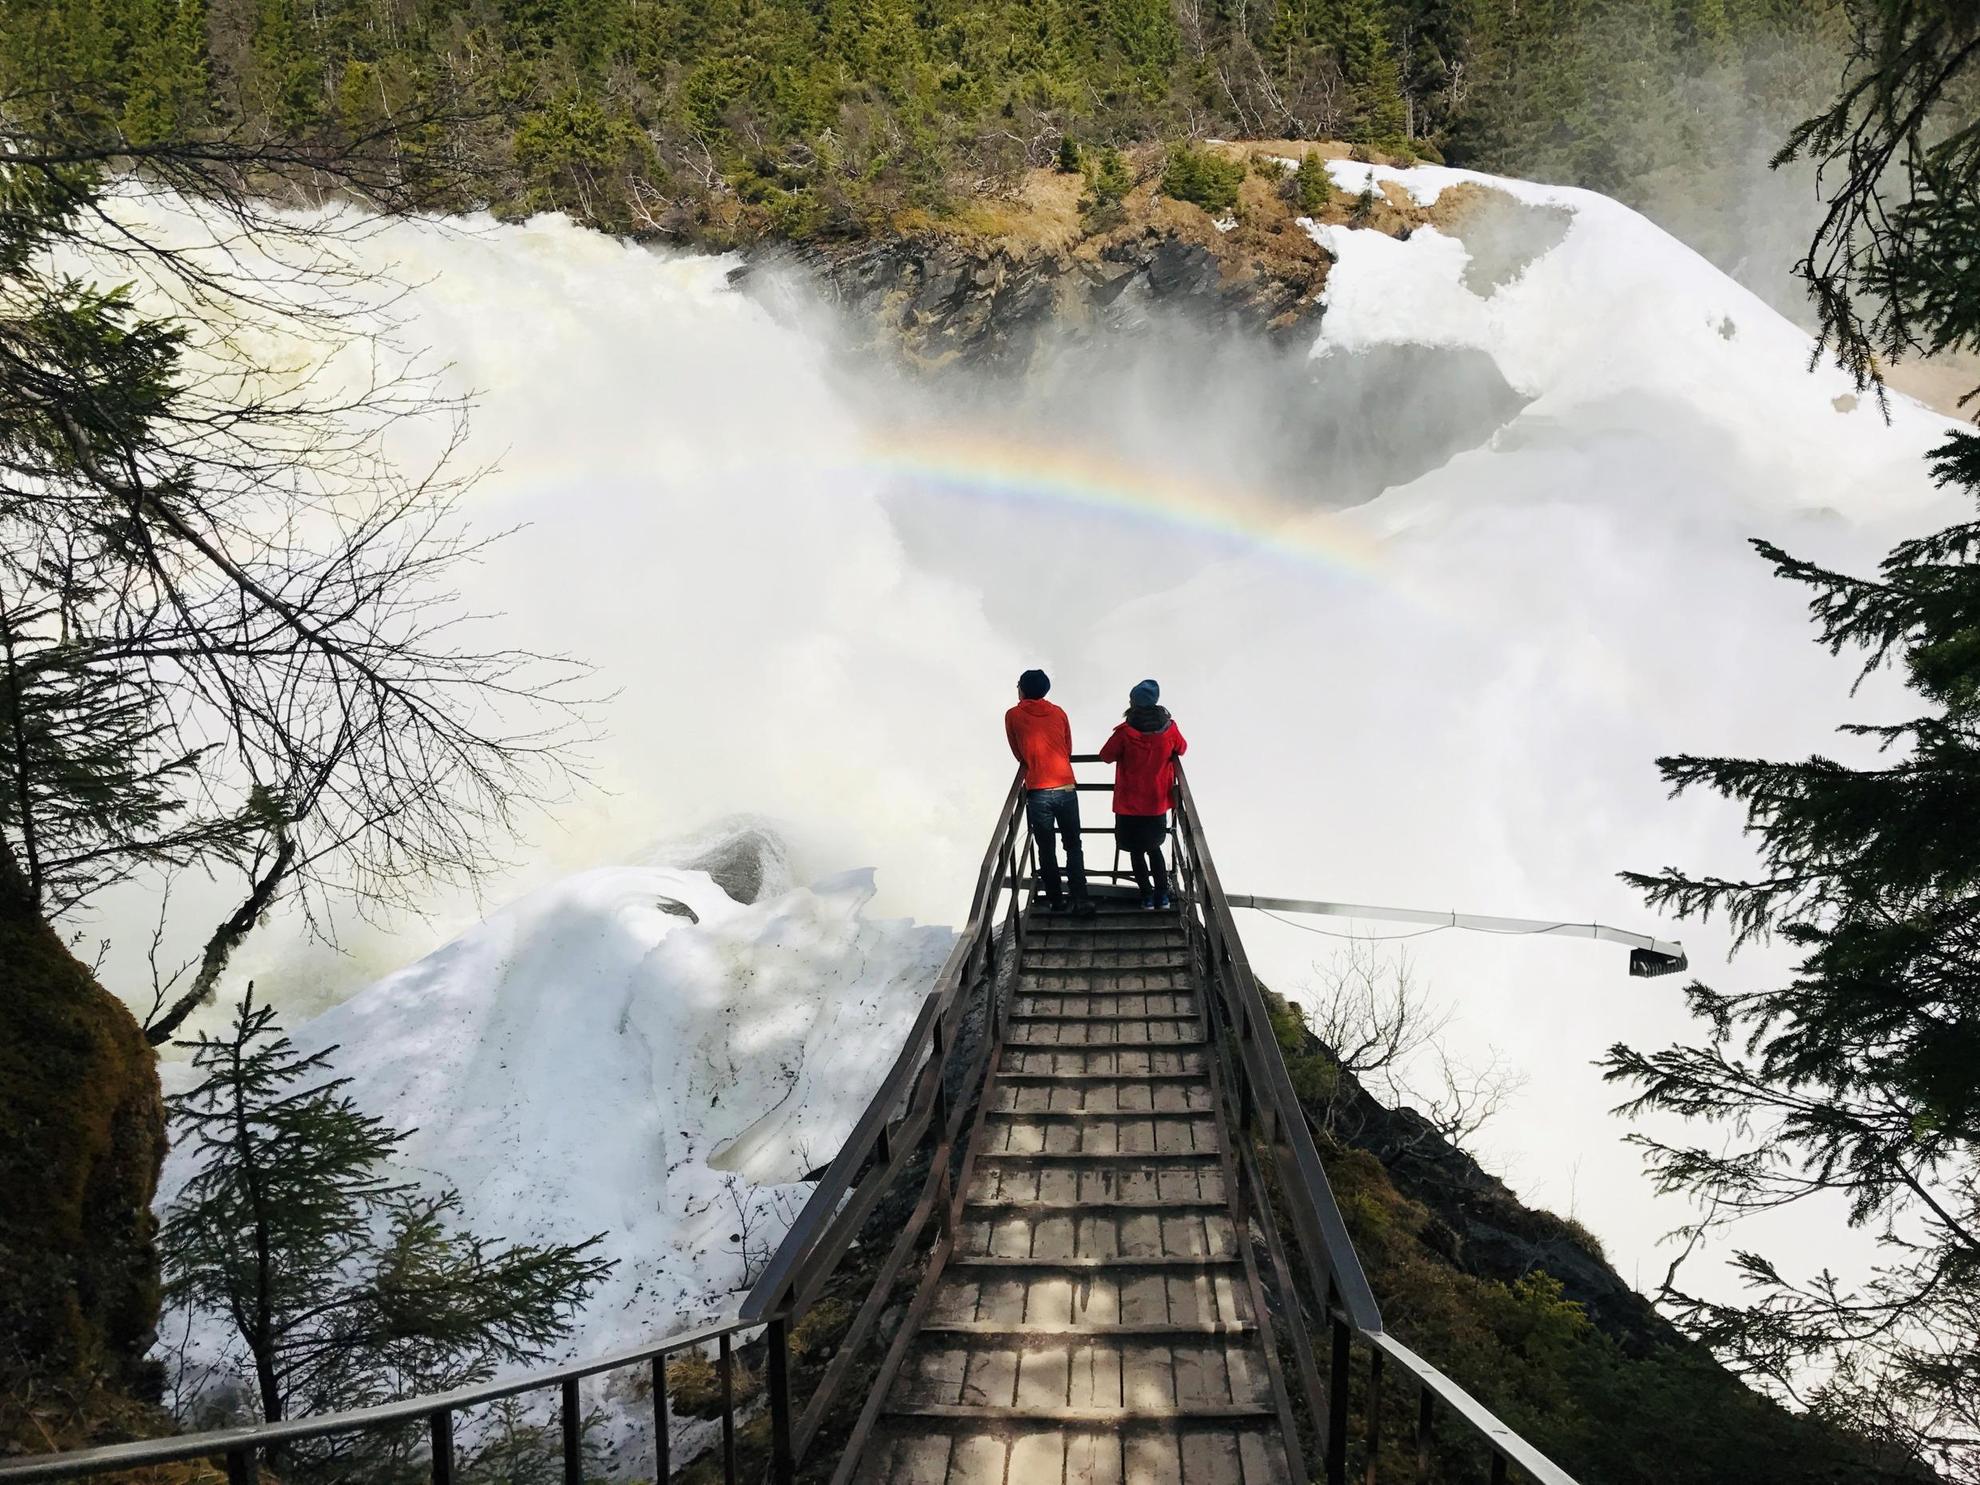 Twee mensen kijken uit op een enorme waterval. Het water van de waterval creëert een regenboog.